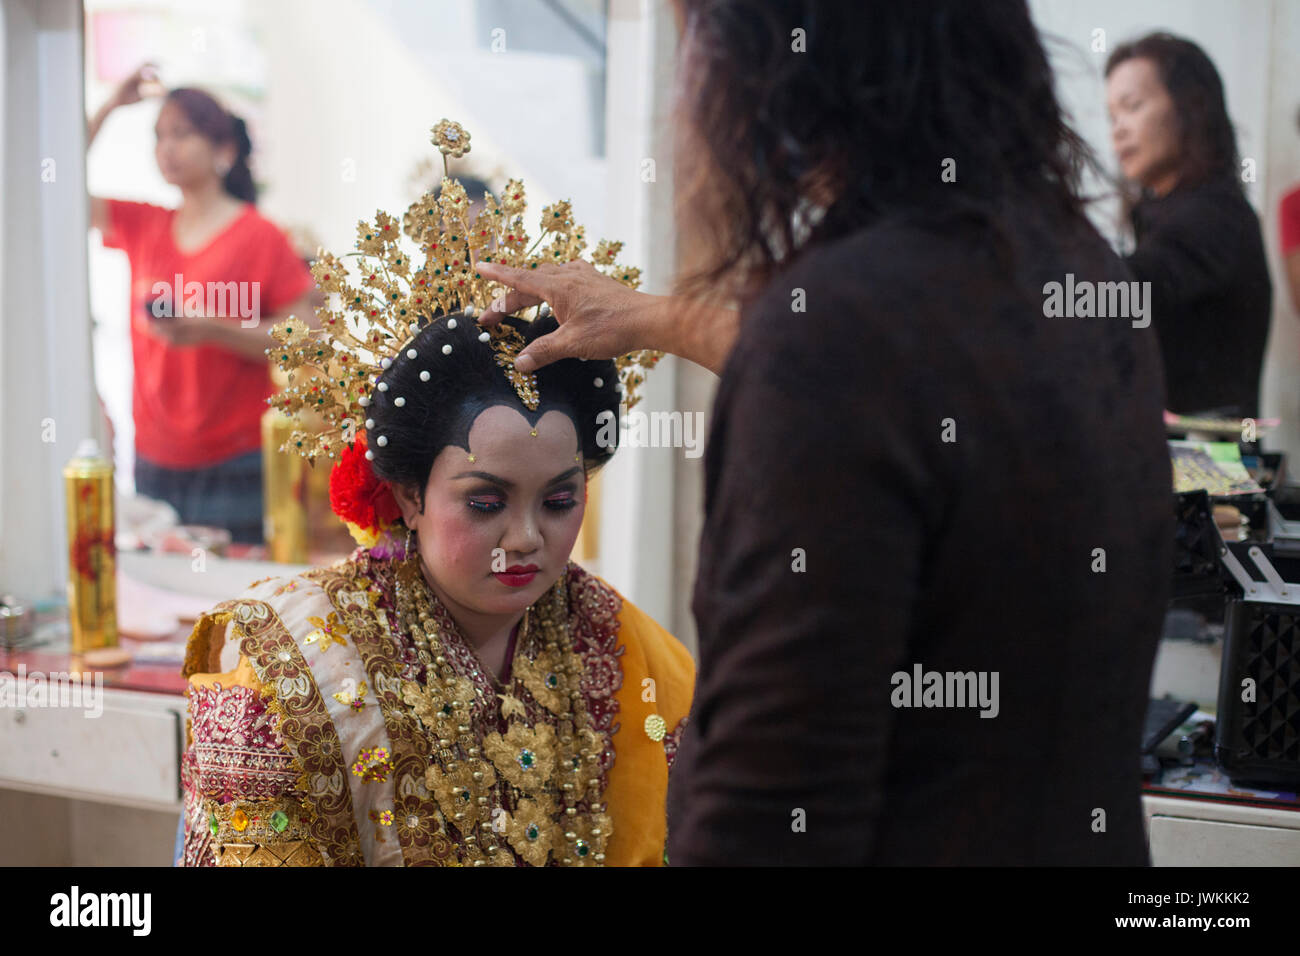 Dopo la finitura del trucco e dressing Rika, la futura sposa nel suo abito da sposa, Ibu Haji Hasna dà lei la benedizione finale, mettendo la mano sulla sua testa e sussurra una preghiera. Foto Stock